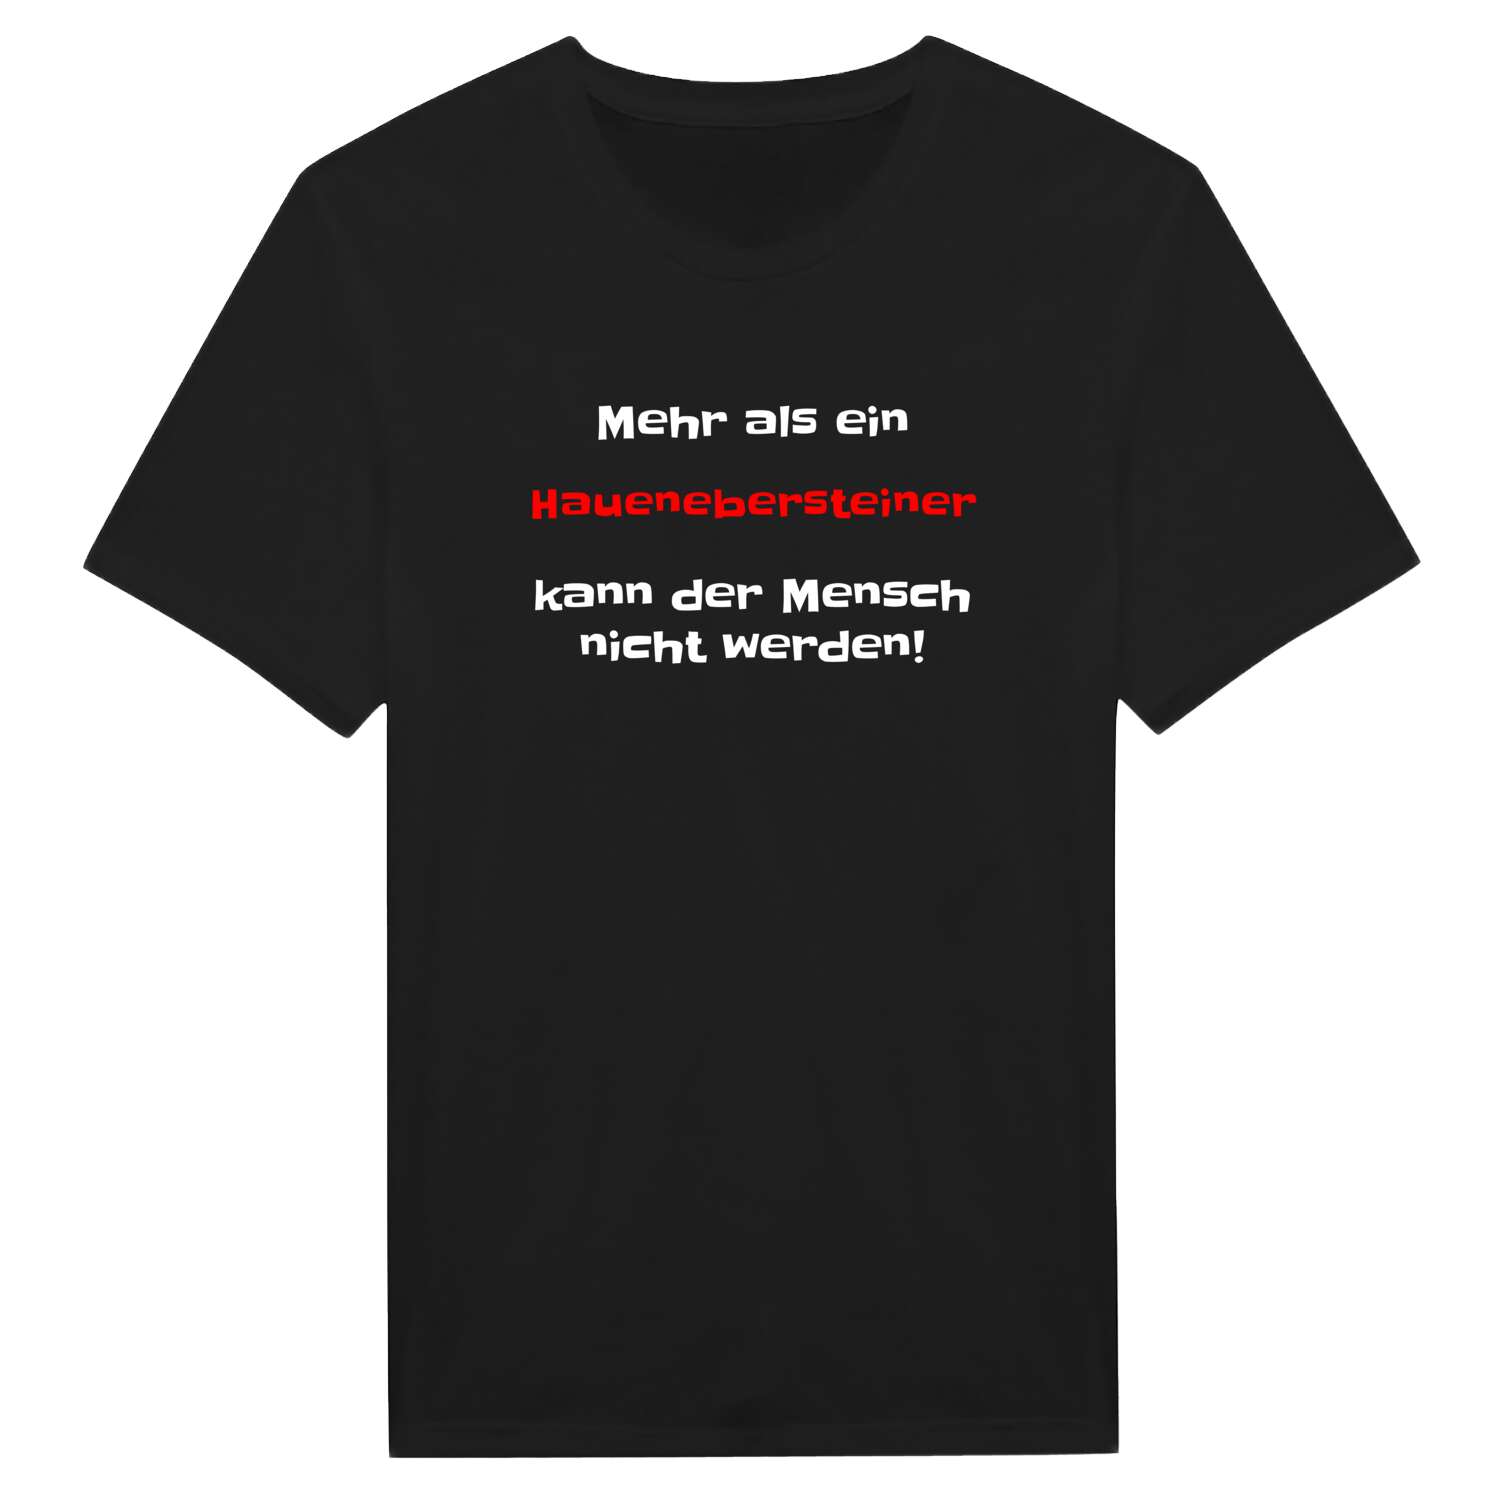 Haueneberstein T-Shirt »Mehr als ein«